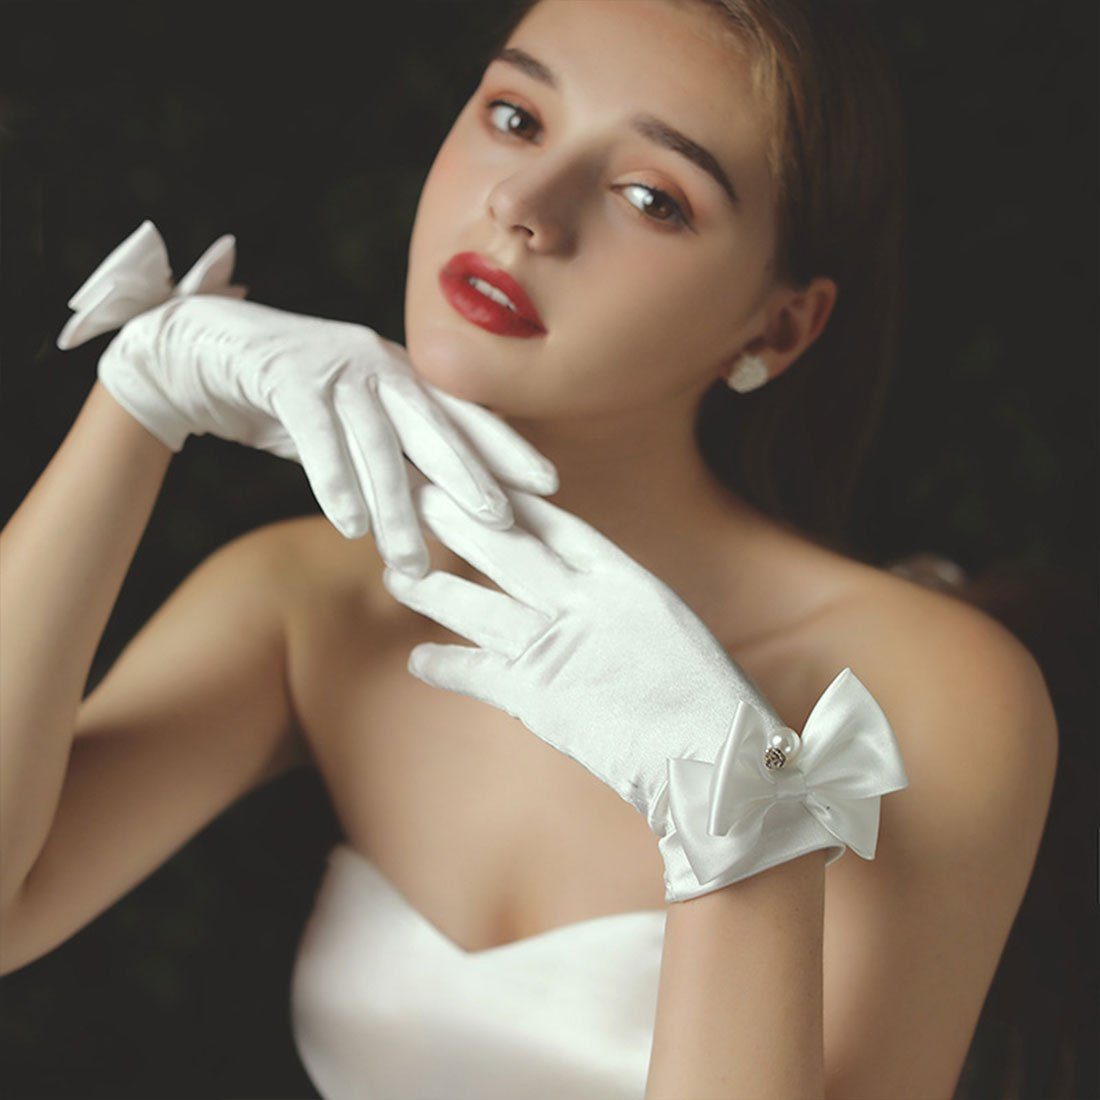 DÖRÖY Abendhandschuhe Französische Satinhandschuhe für die Braut, kurze perlweiße Handschuhe